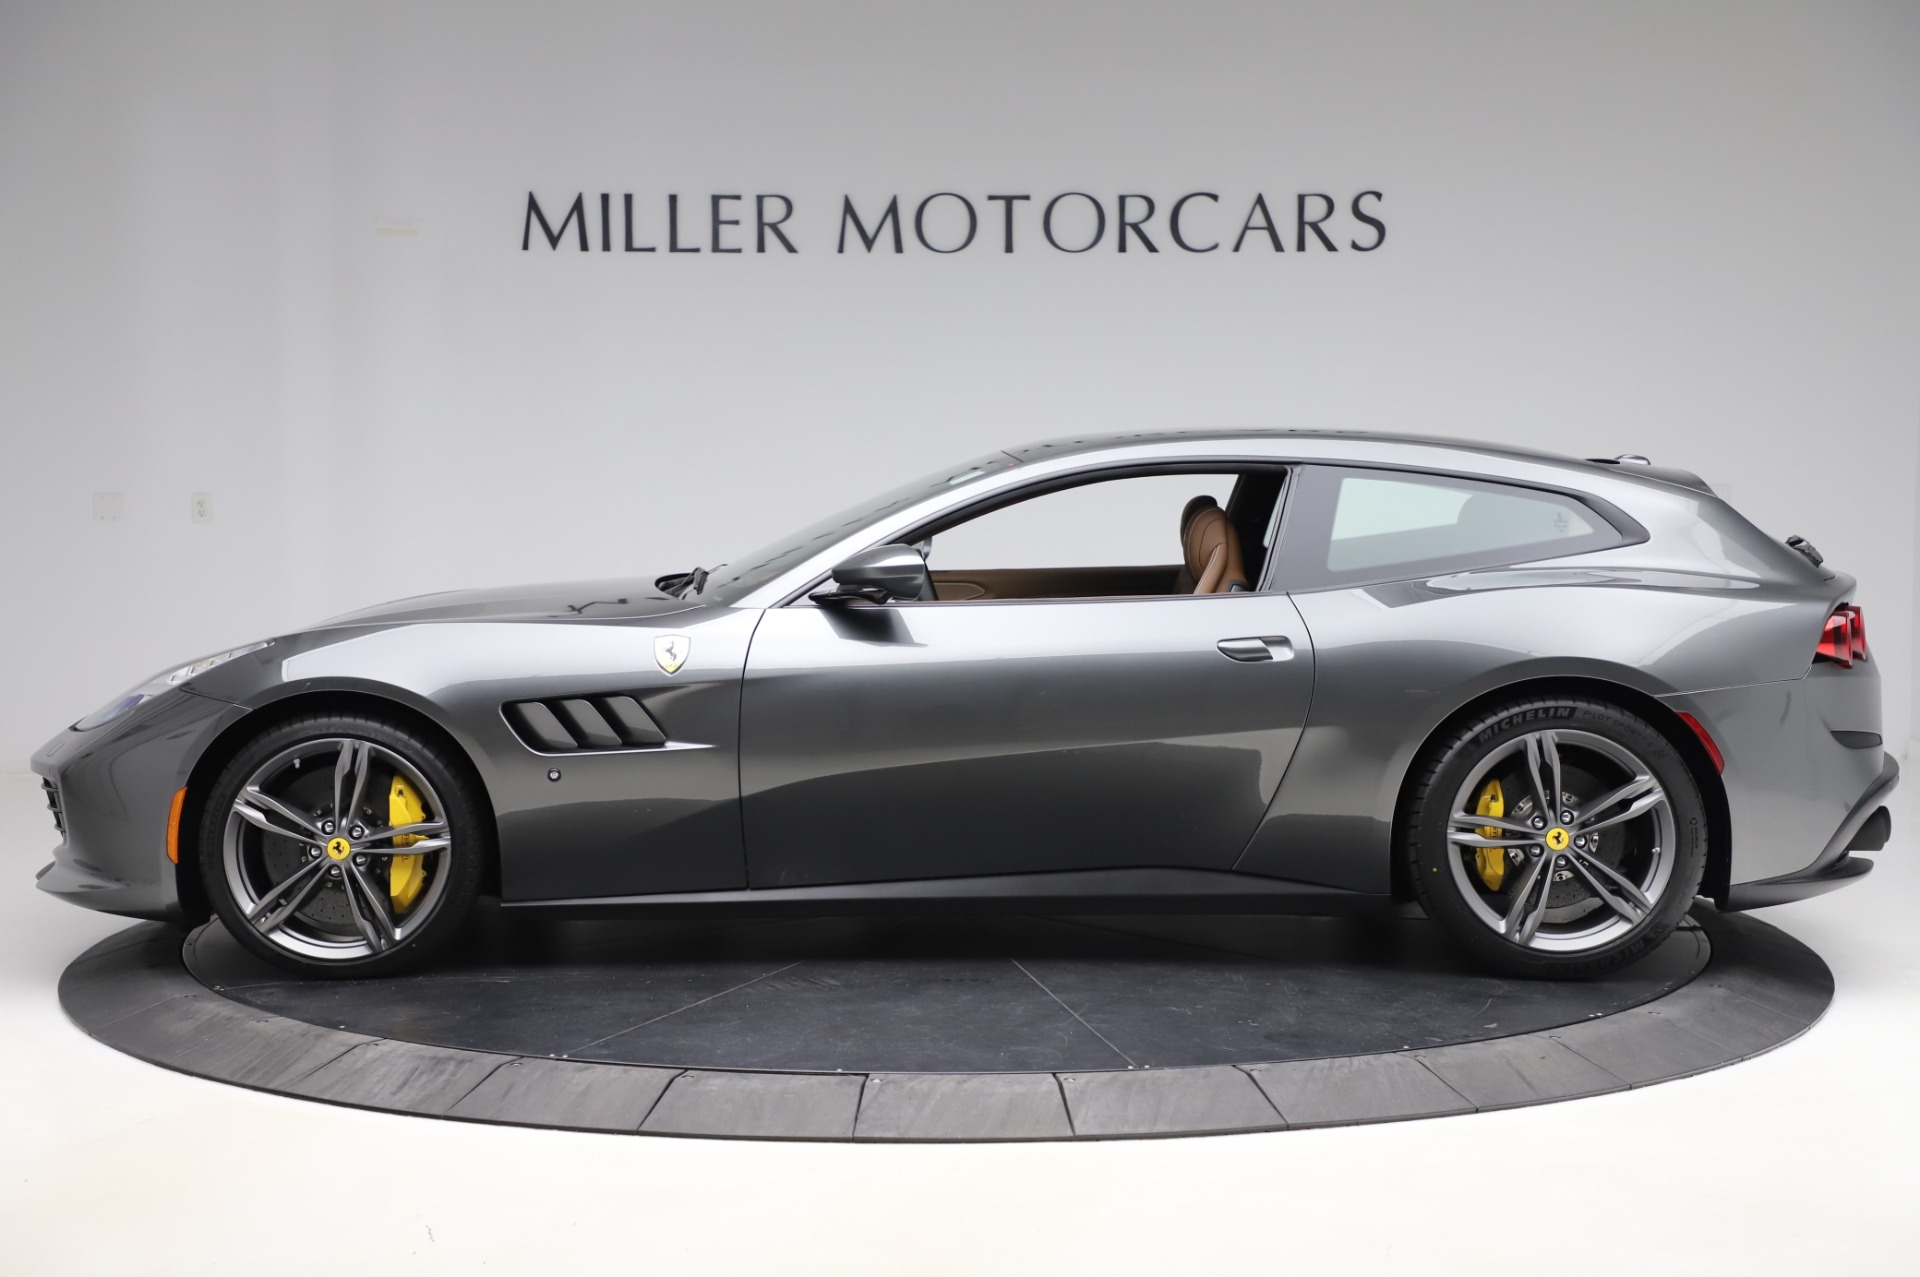 PreOwned 2020 Ferrari GTC4Lusso For Sale () Miller Motorcars Stock 